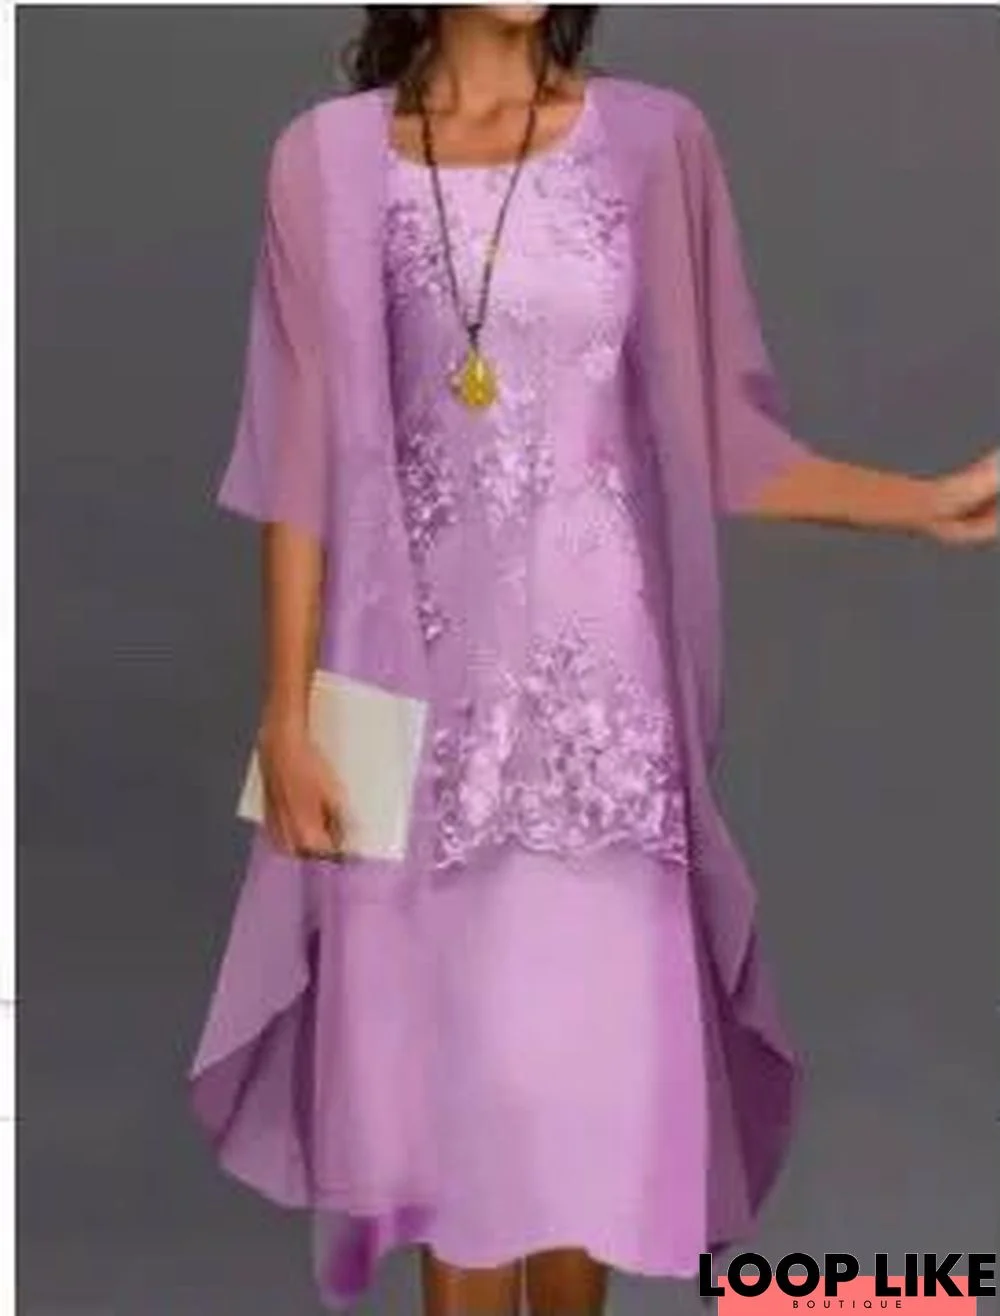 Fashionable and Elegant Lace Chiffon Dress Two Piece Set